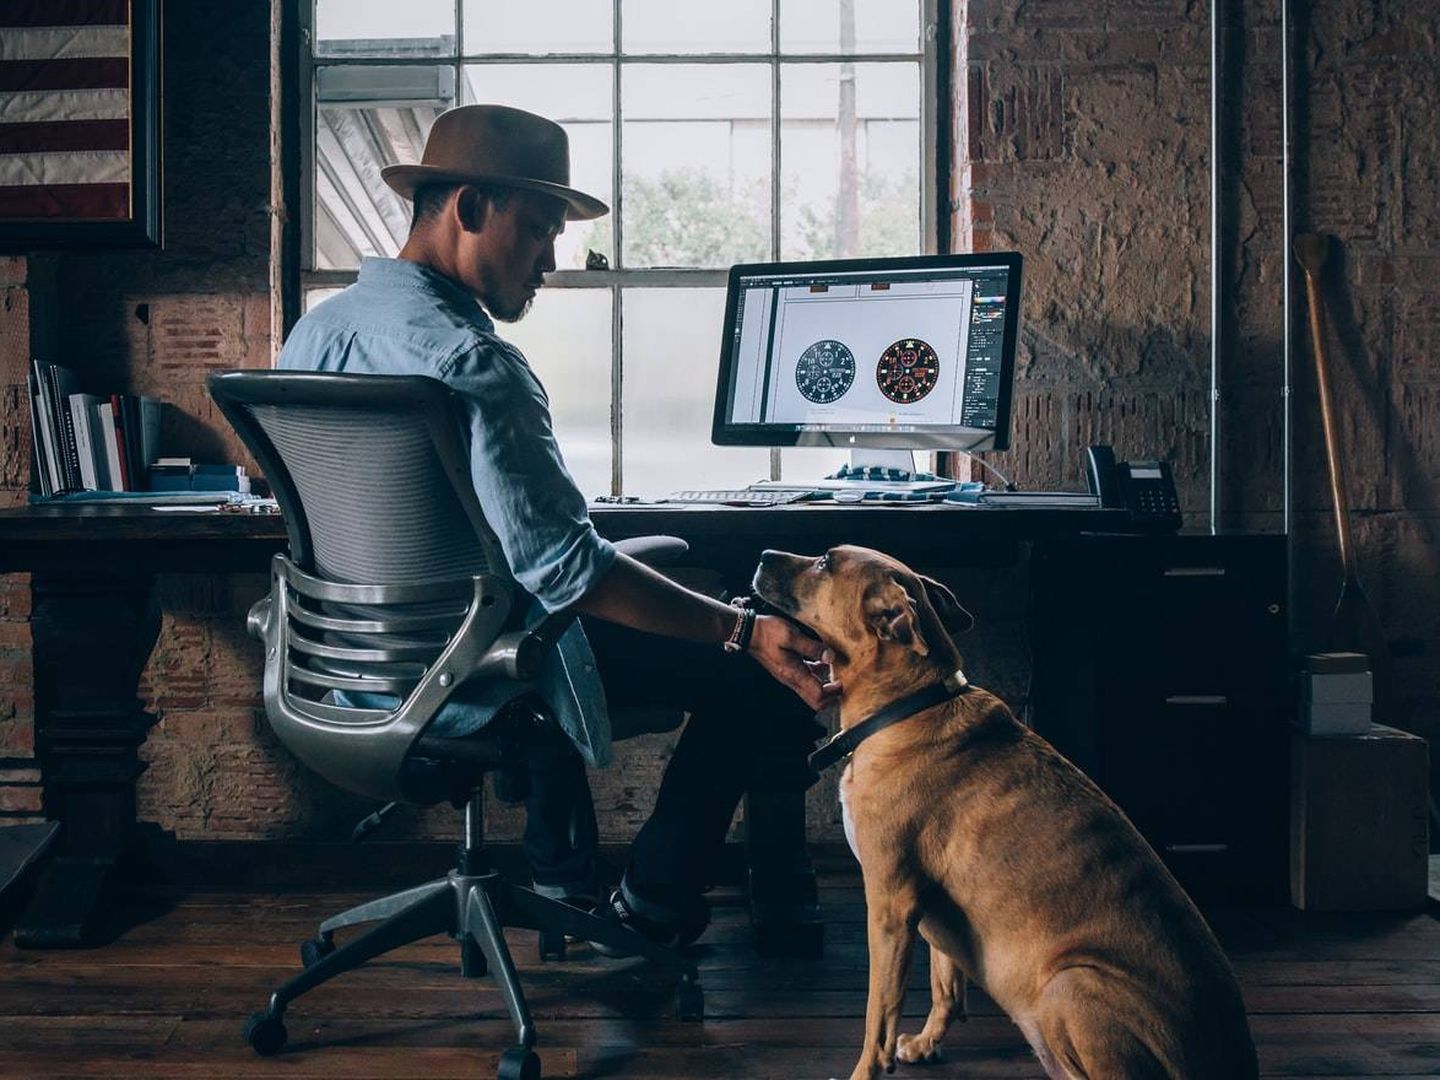 Un estudio revela que acudir a la oficina acompañado de tu mascota aumenta la productividad. (Foto: Unsplash - Devin Edwards)